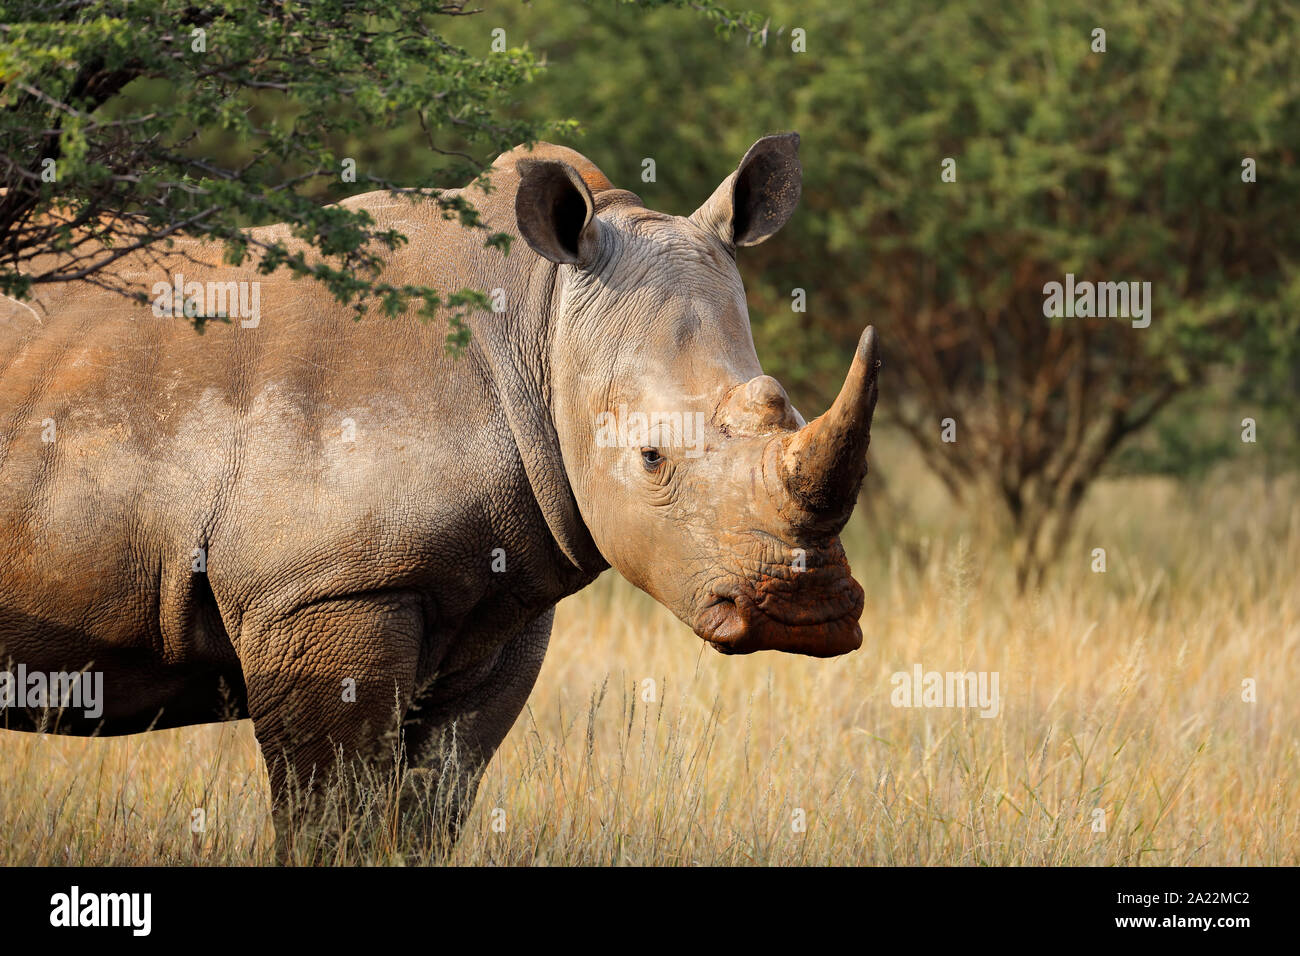 Portrait d'un rhinocéros blanc (Ceratotherium simum) dans l'habitat naturel, l'Afrique du Sud Banque D'Images